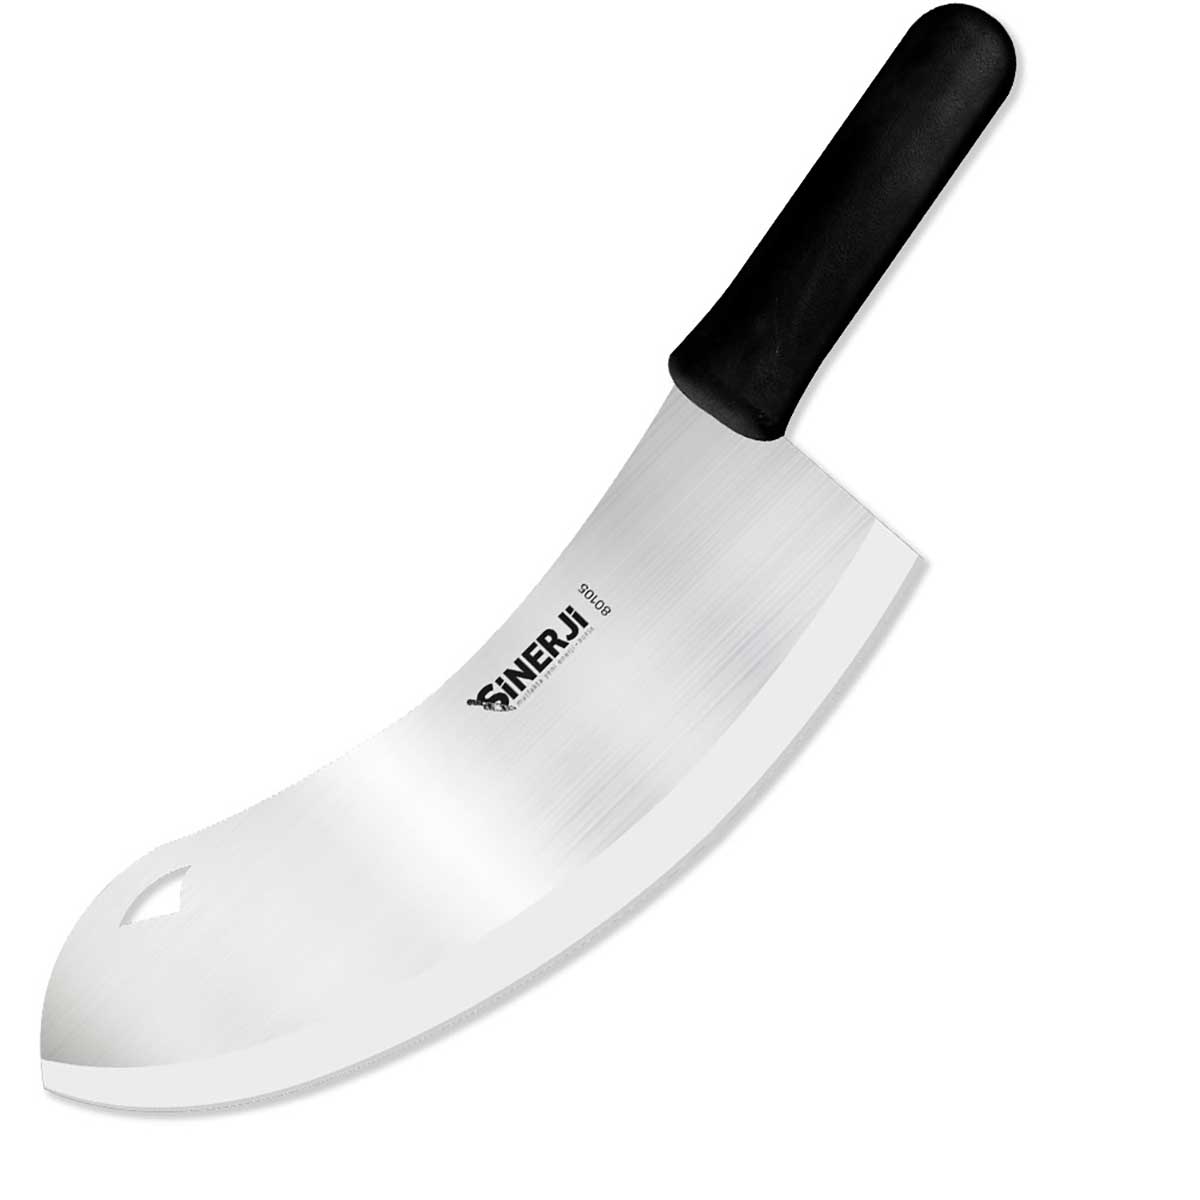 Sinerji 55 Cm Paslanmaz Zırh – 80110 Mutfak Bıçakları